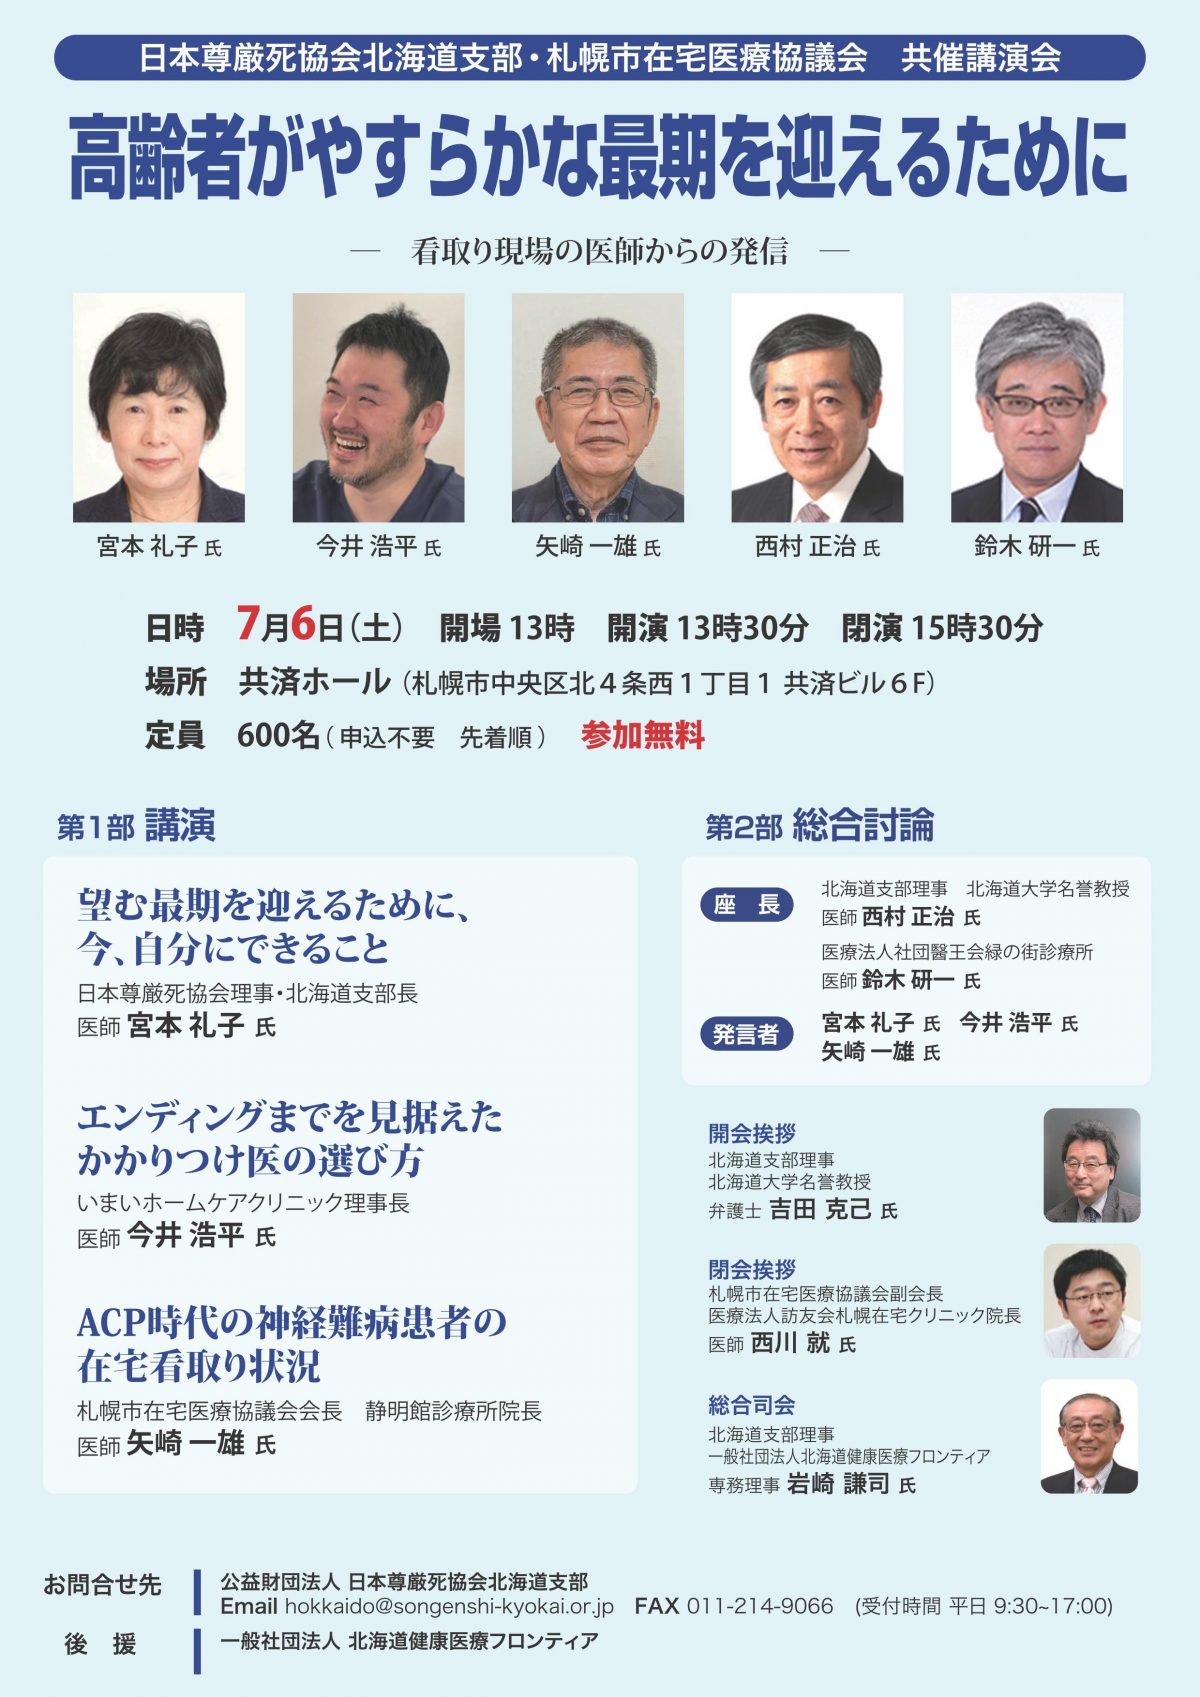 ７月６日の日本尊厳死協会北海道支部の講演会で講演します。興味ある人は来てくださいね。